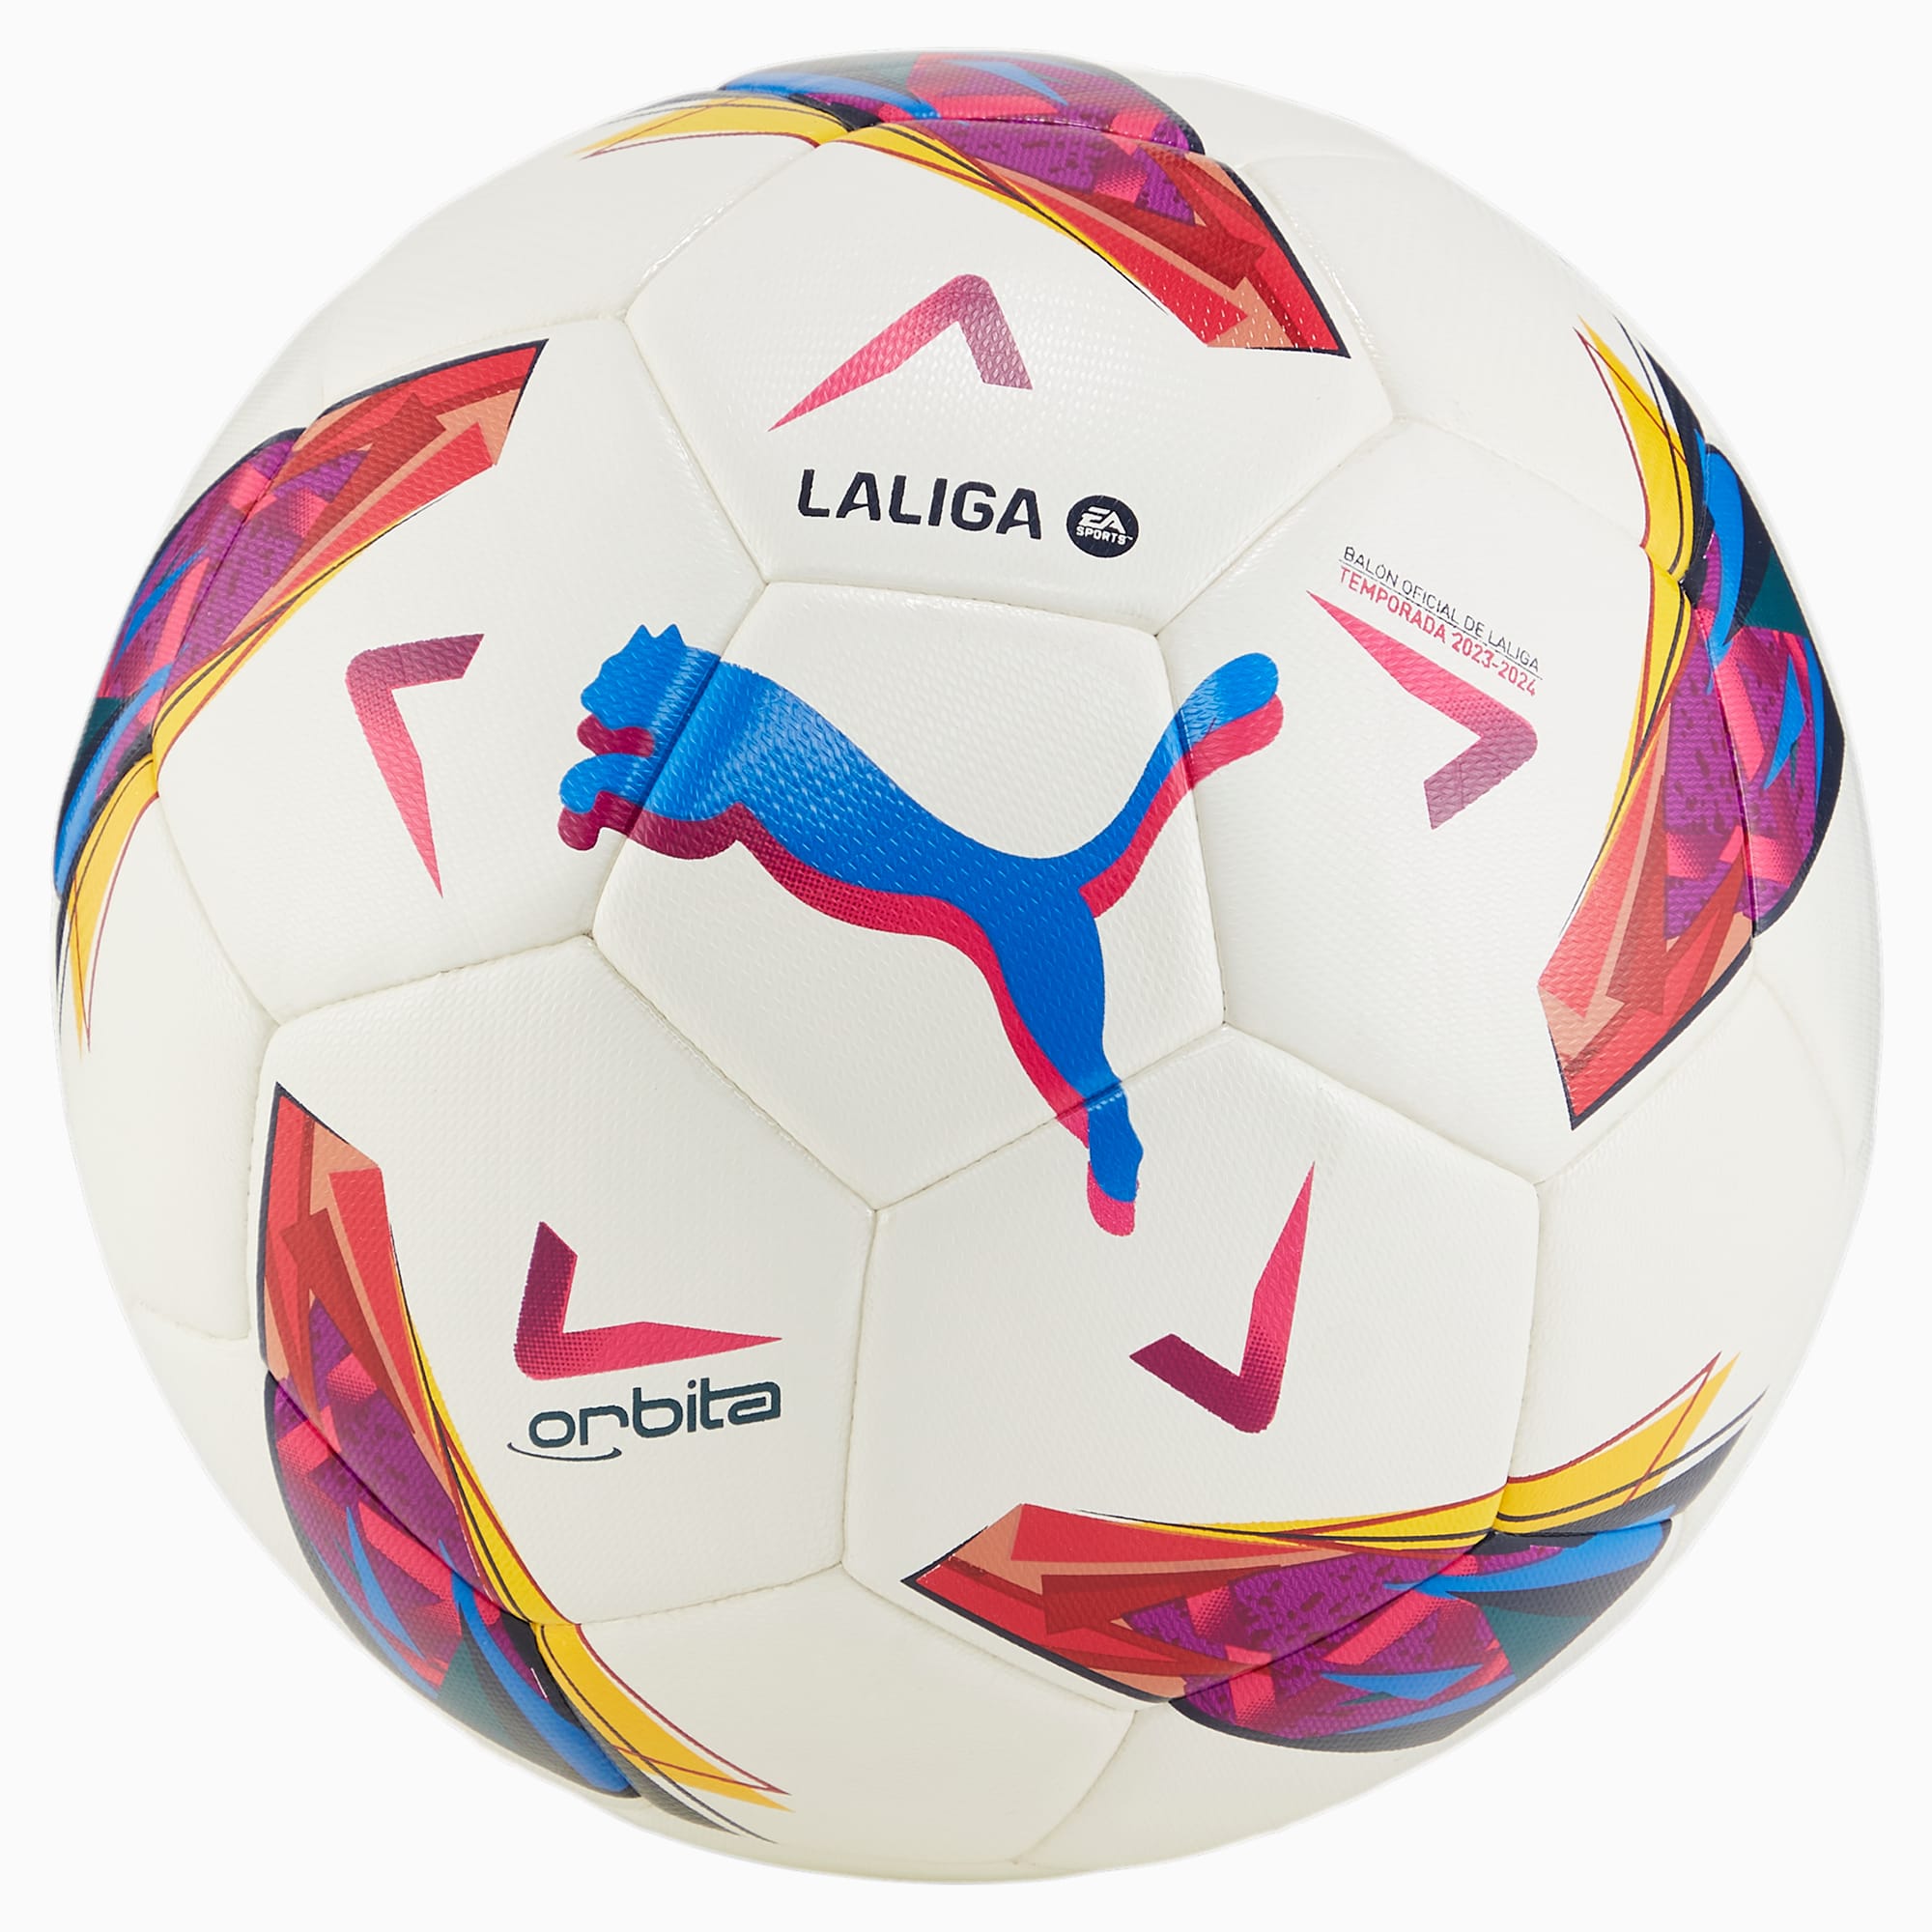 PUMA Orbita LaLiga Hybrid Trainingsfußball Für Damen, Weiß, Größe: 3, Accessoires